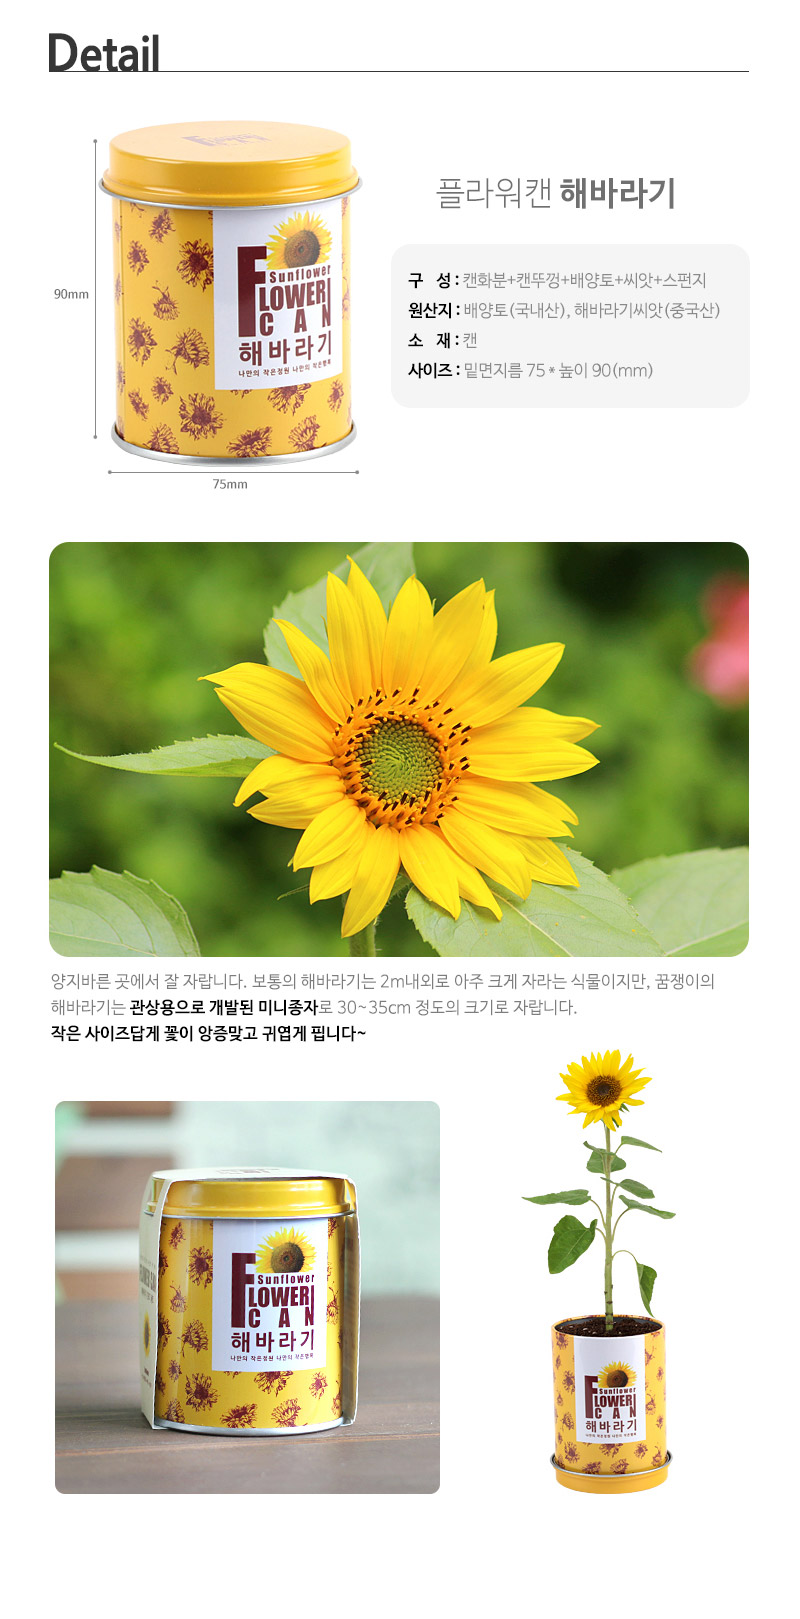 flowercan-sunflower_02.jpg